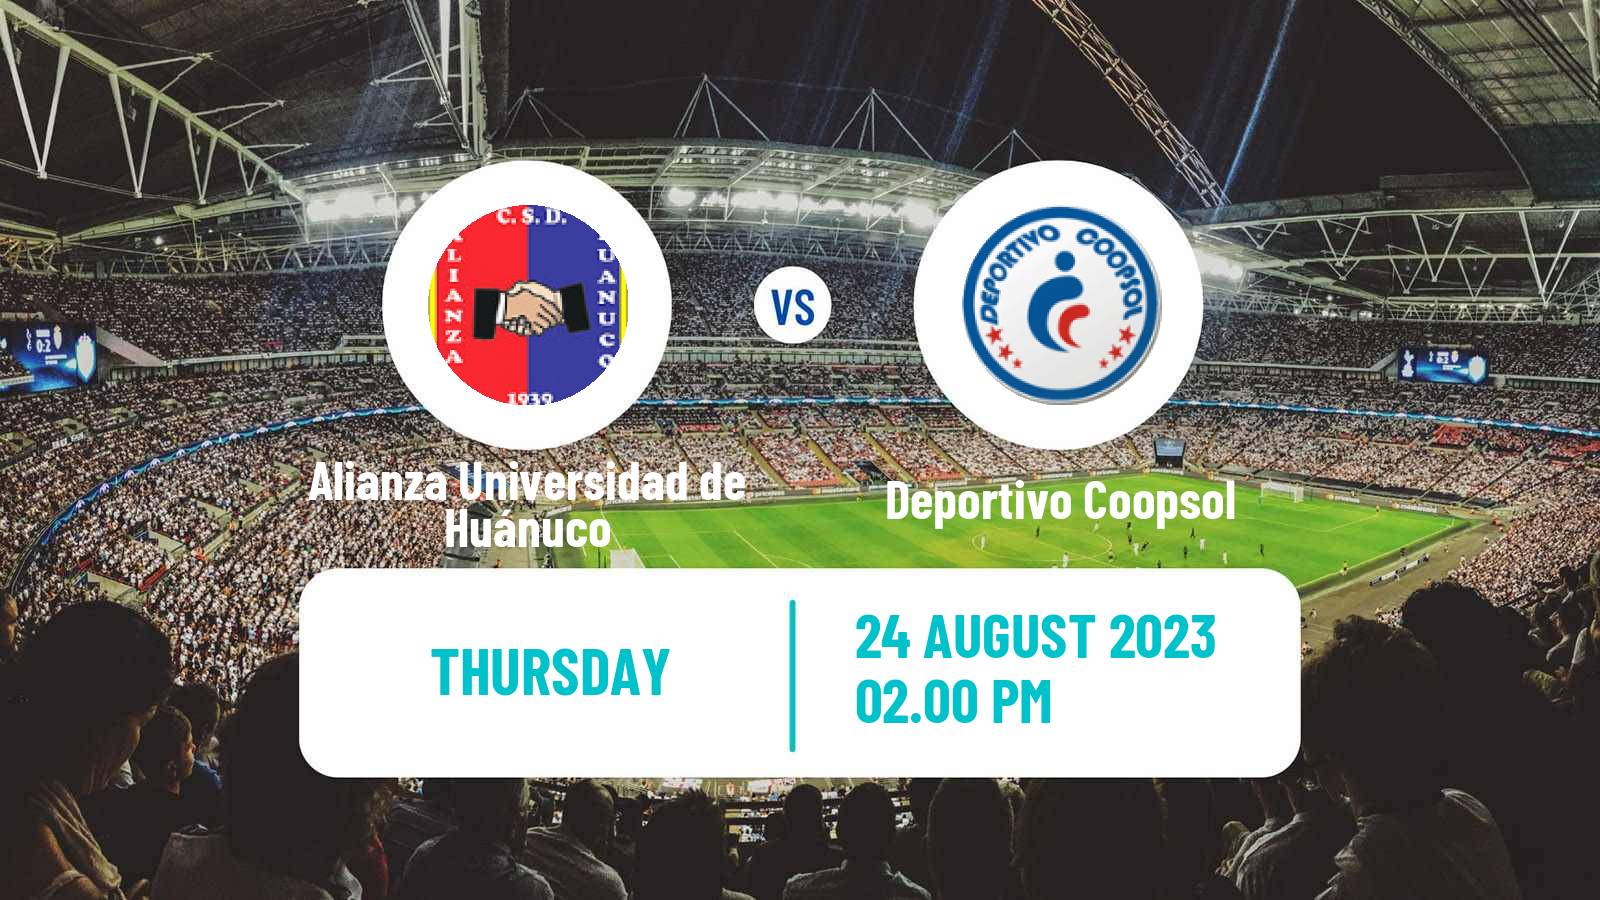 Soccer Peruvian Liga 2 Alianza Universidad de Huánuco - Deportivo Coopsol